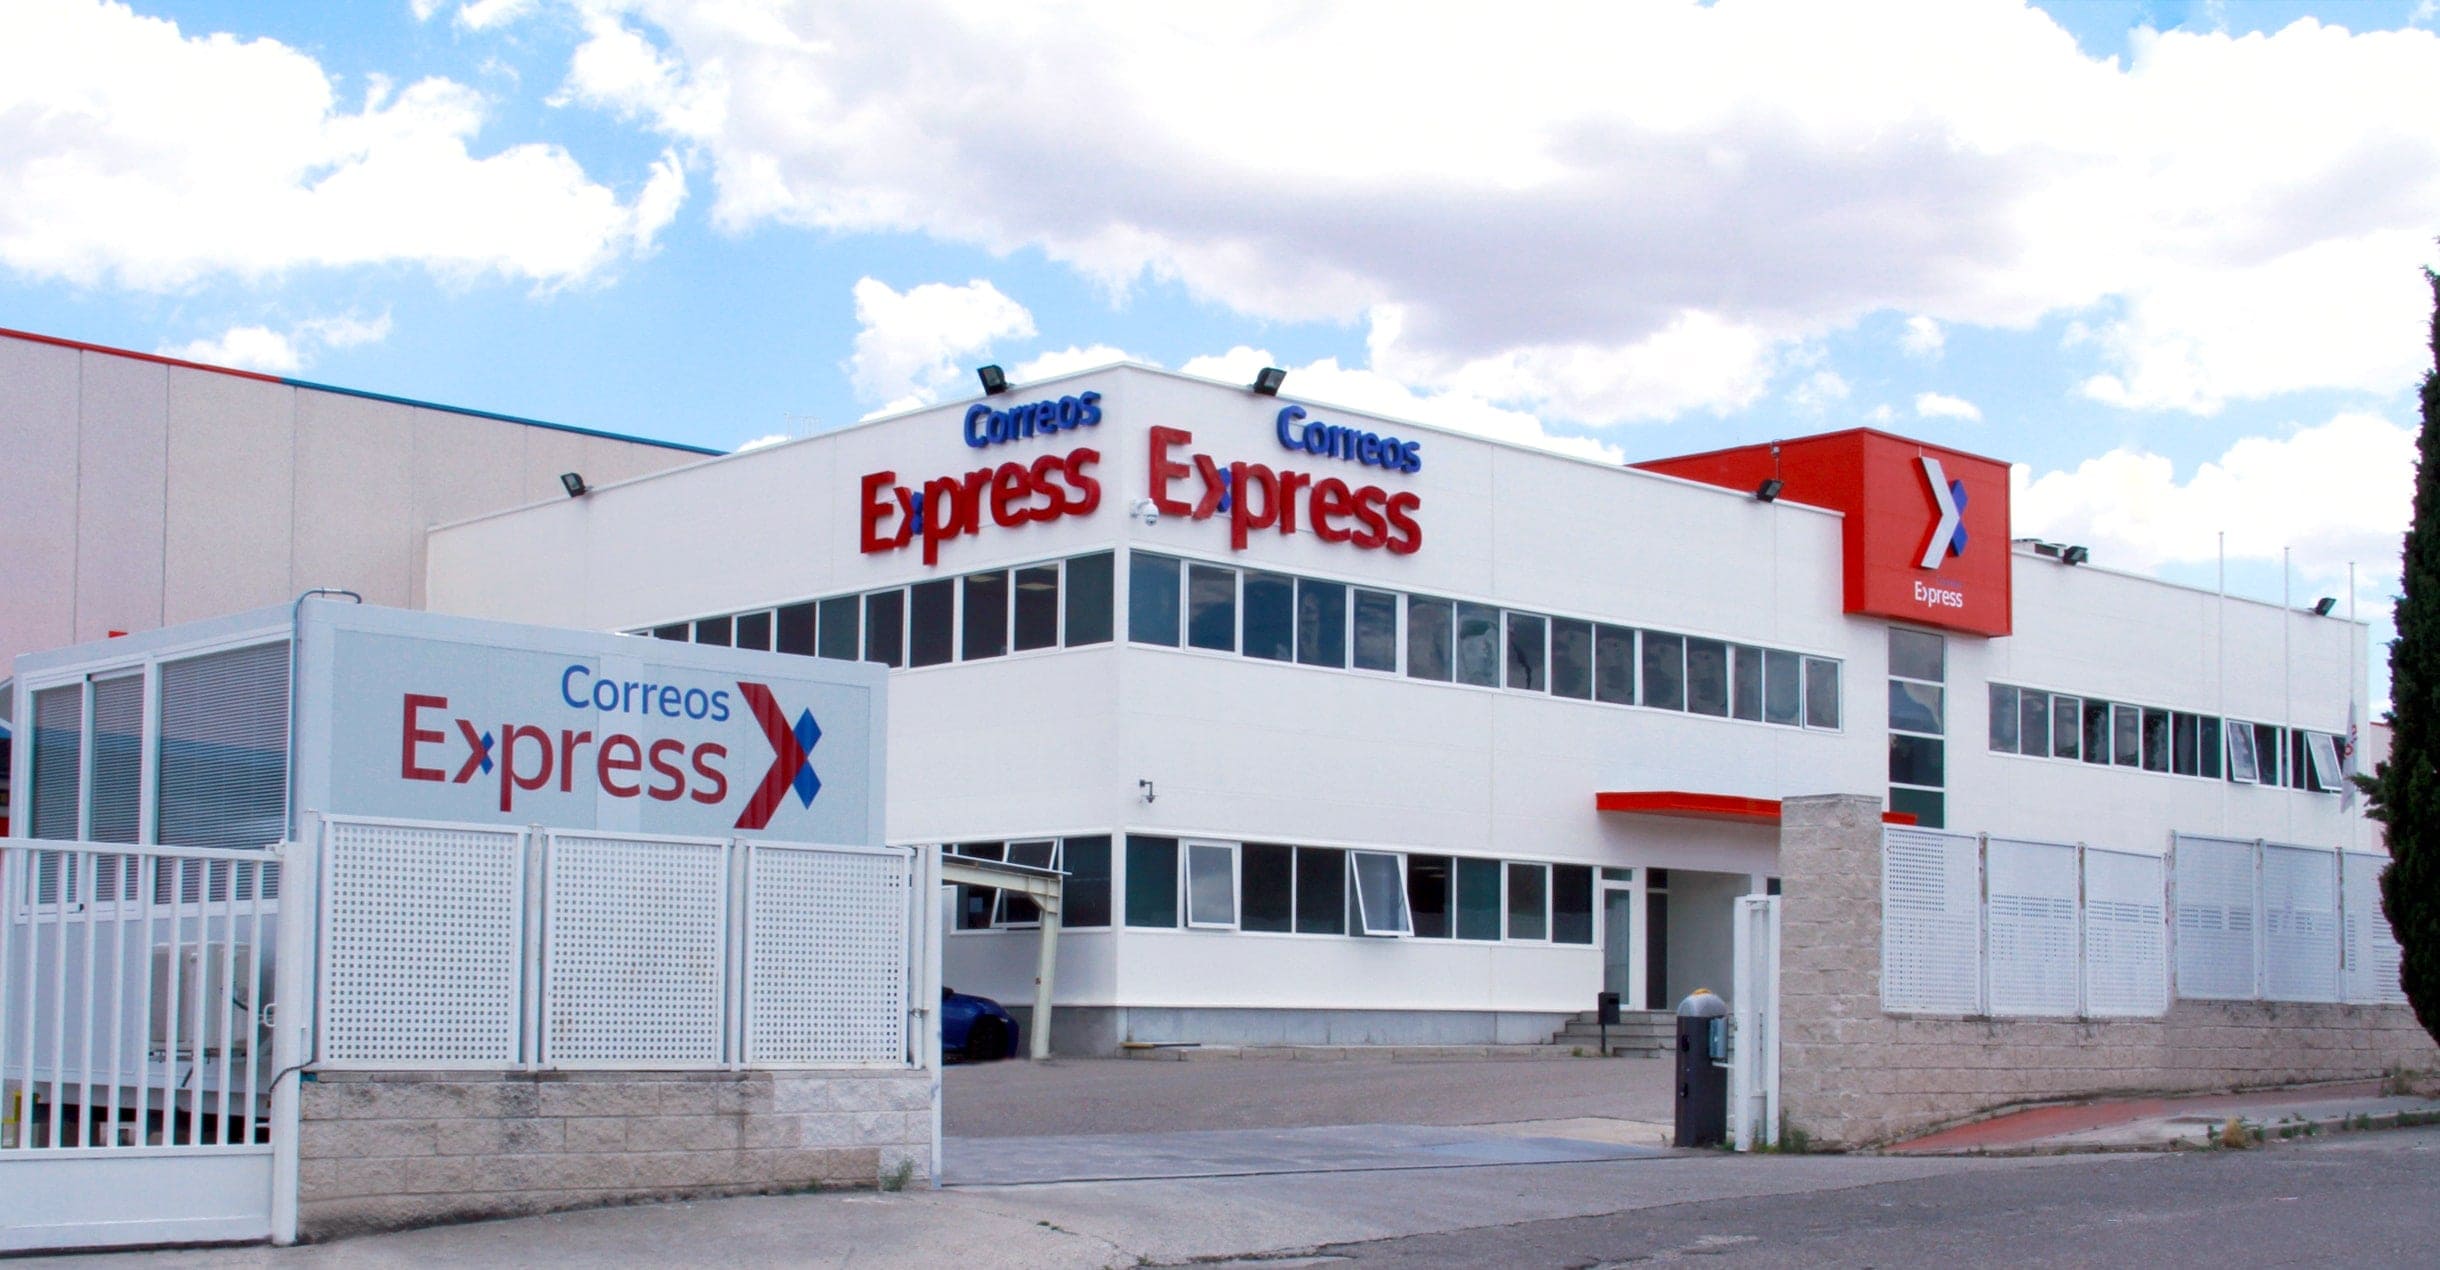 Correos Express moderniza sus instalaciones para adaptarse a las nuevas necesidades del mercado